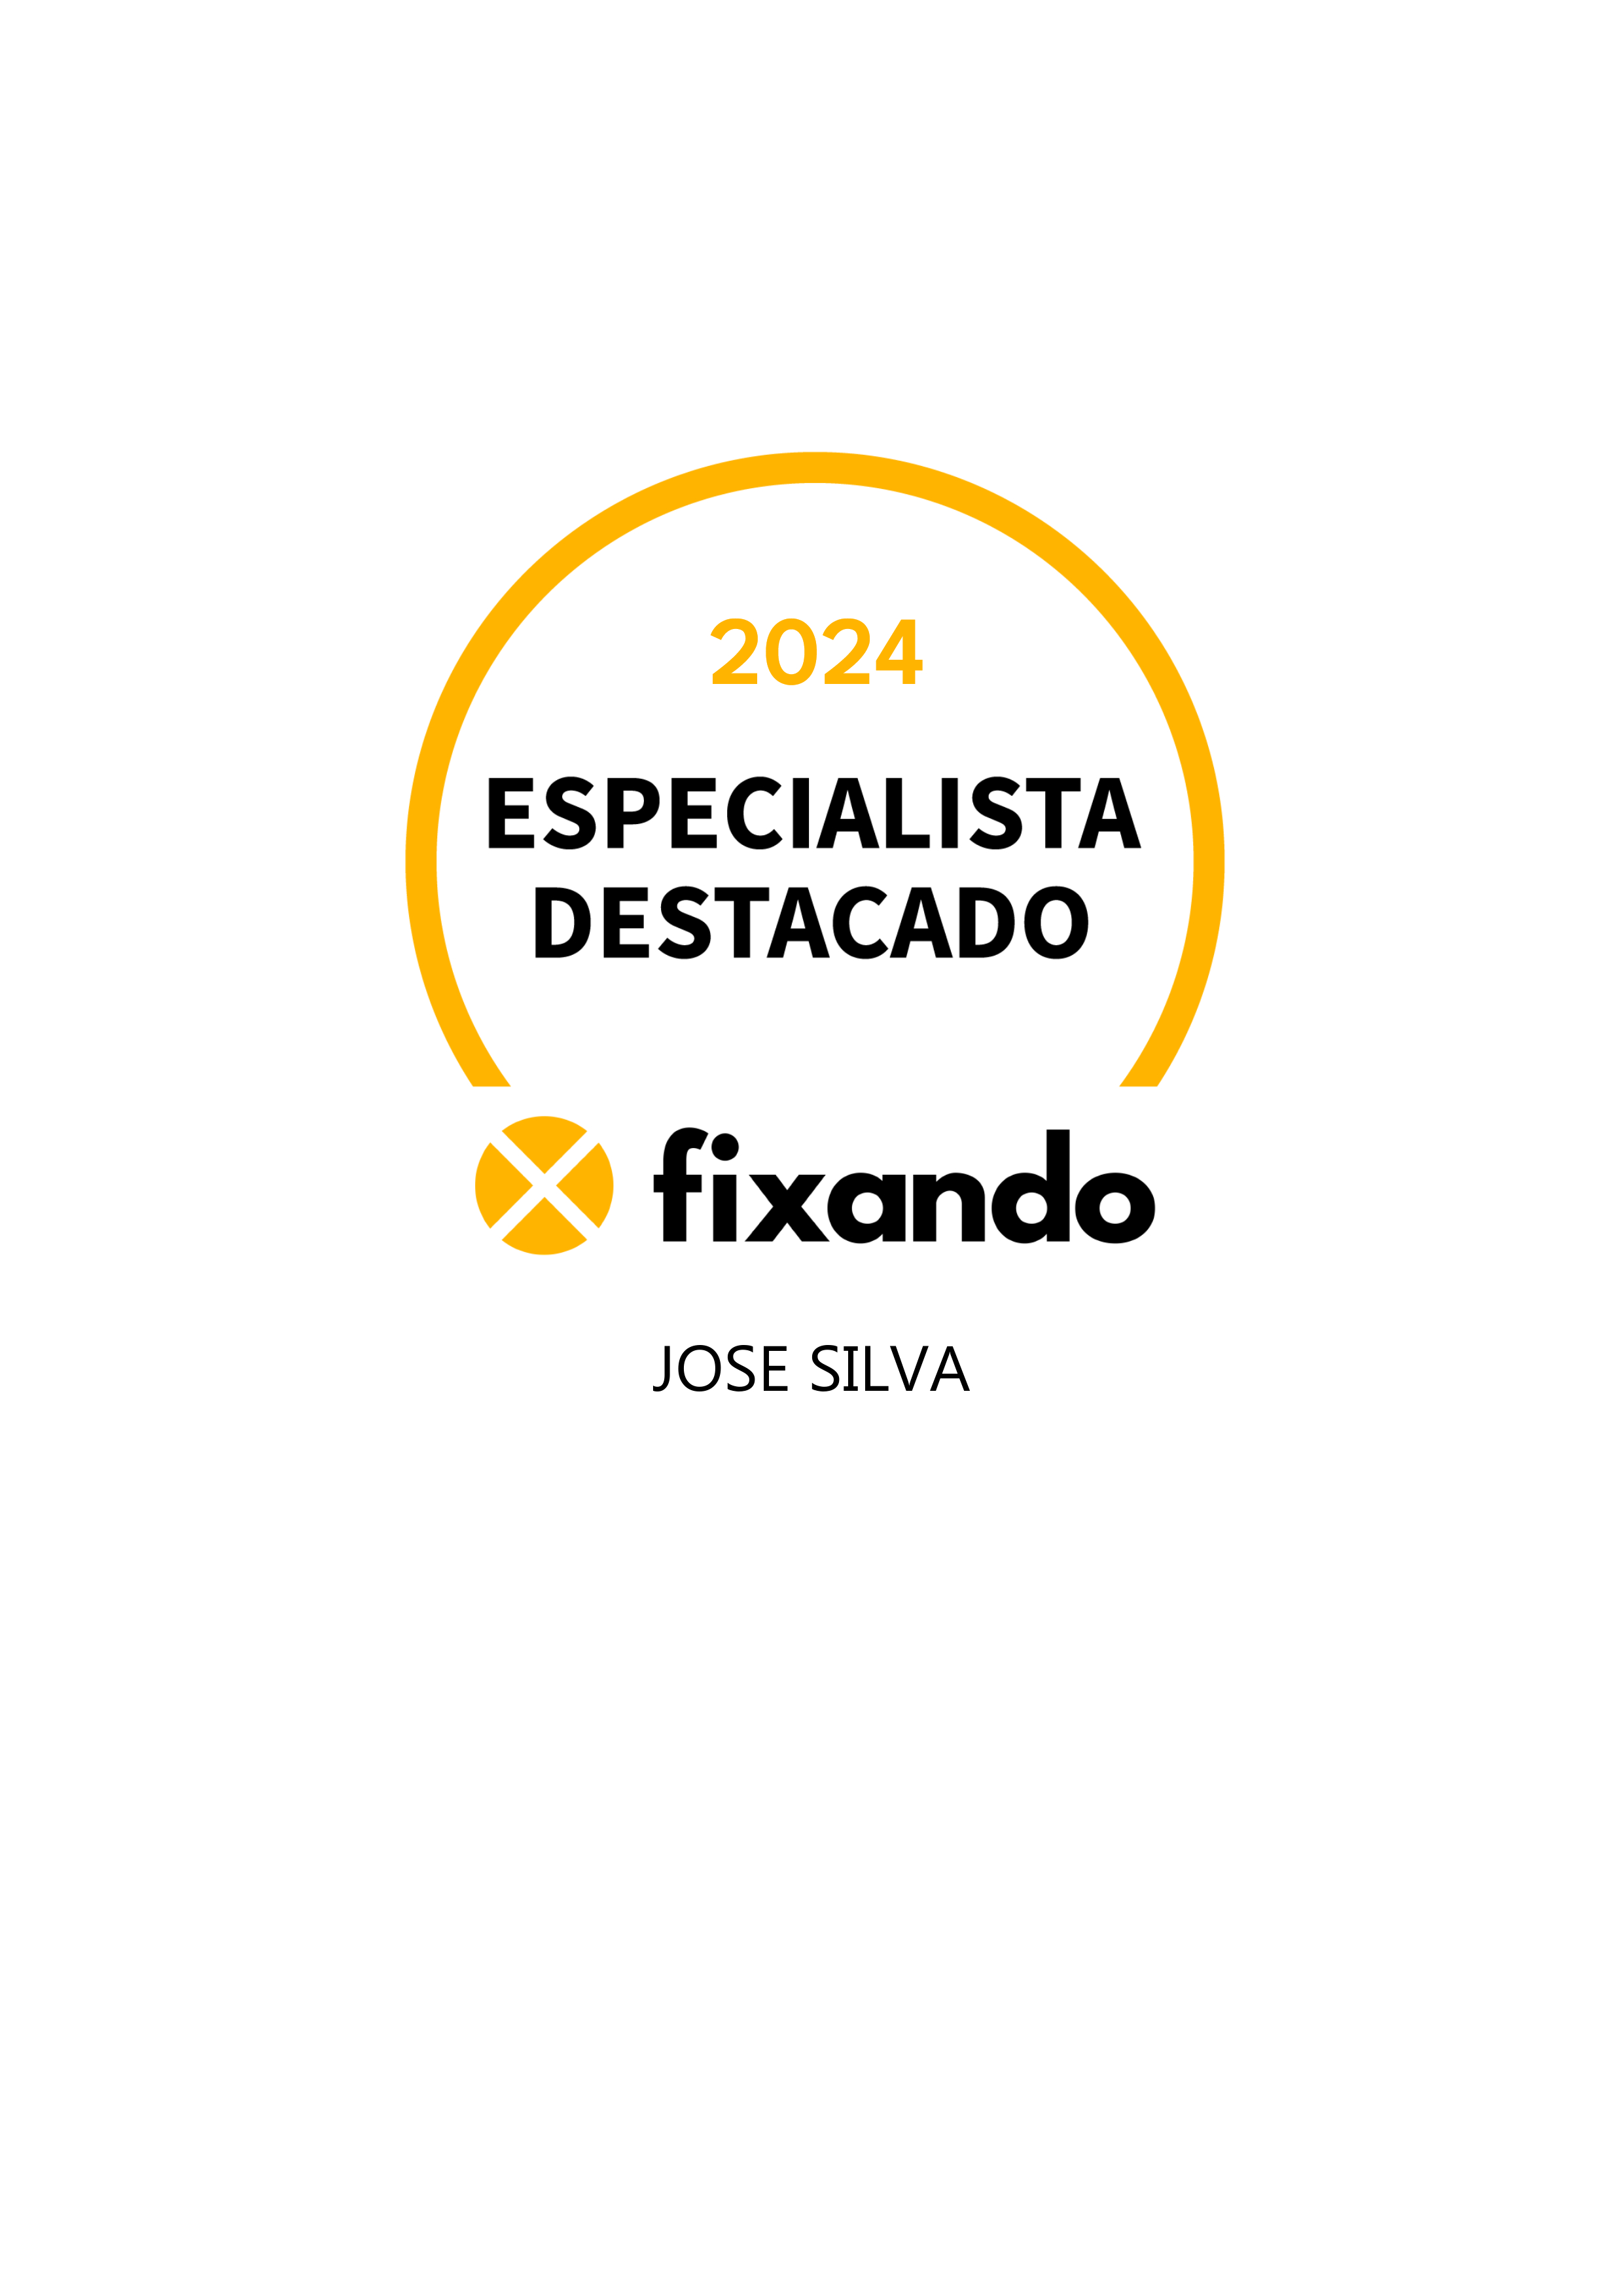 Jose silva - Vila Franca de Xira - Instalação de Escadas